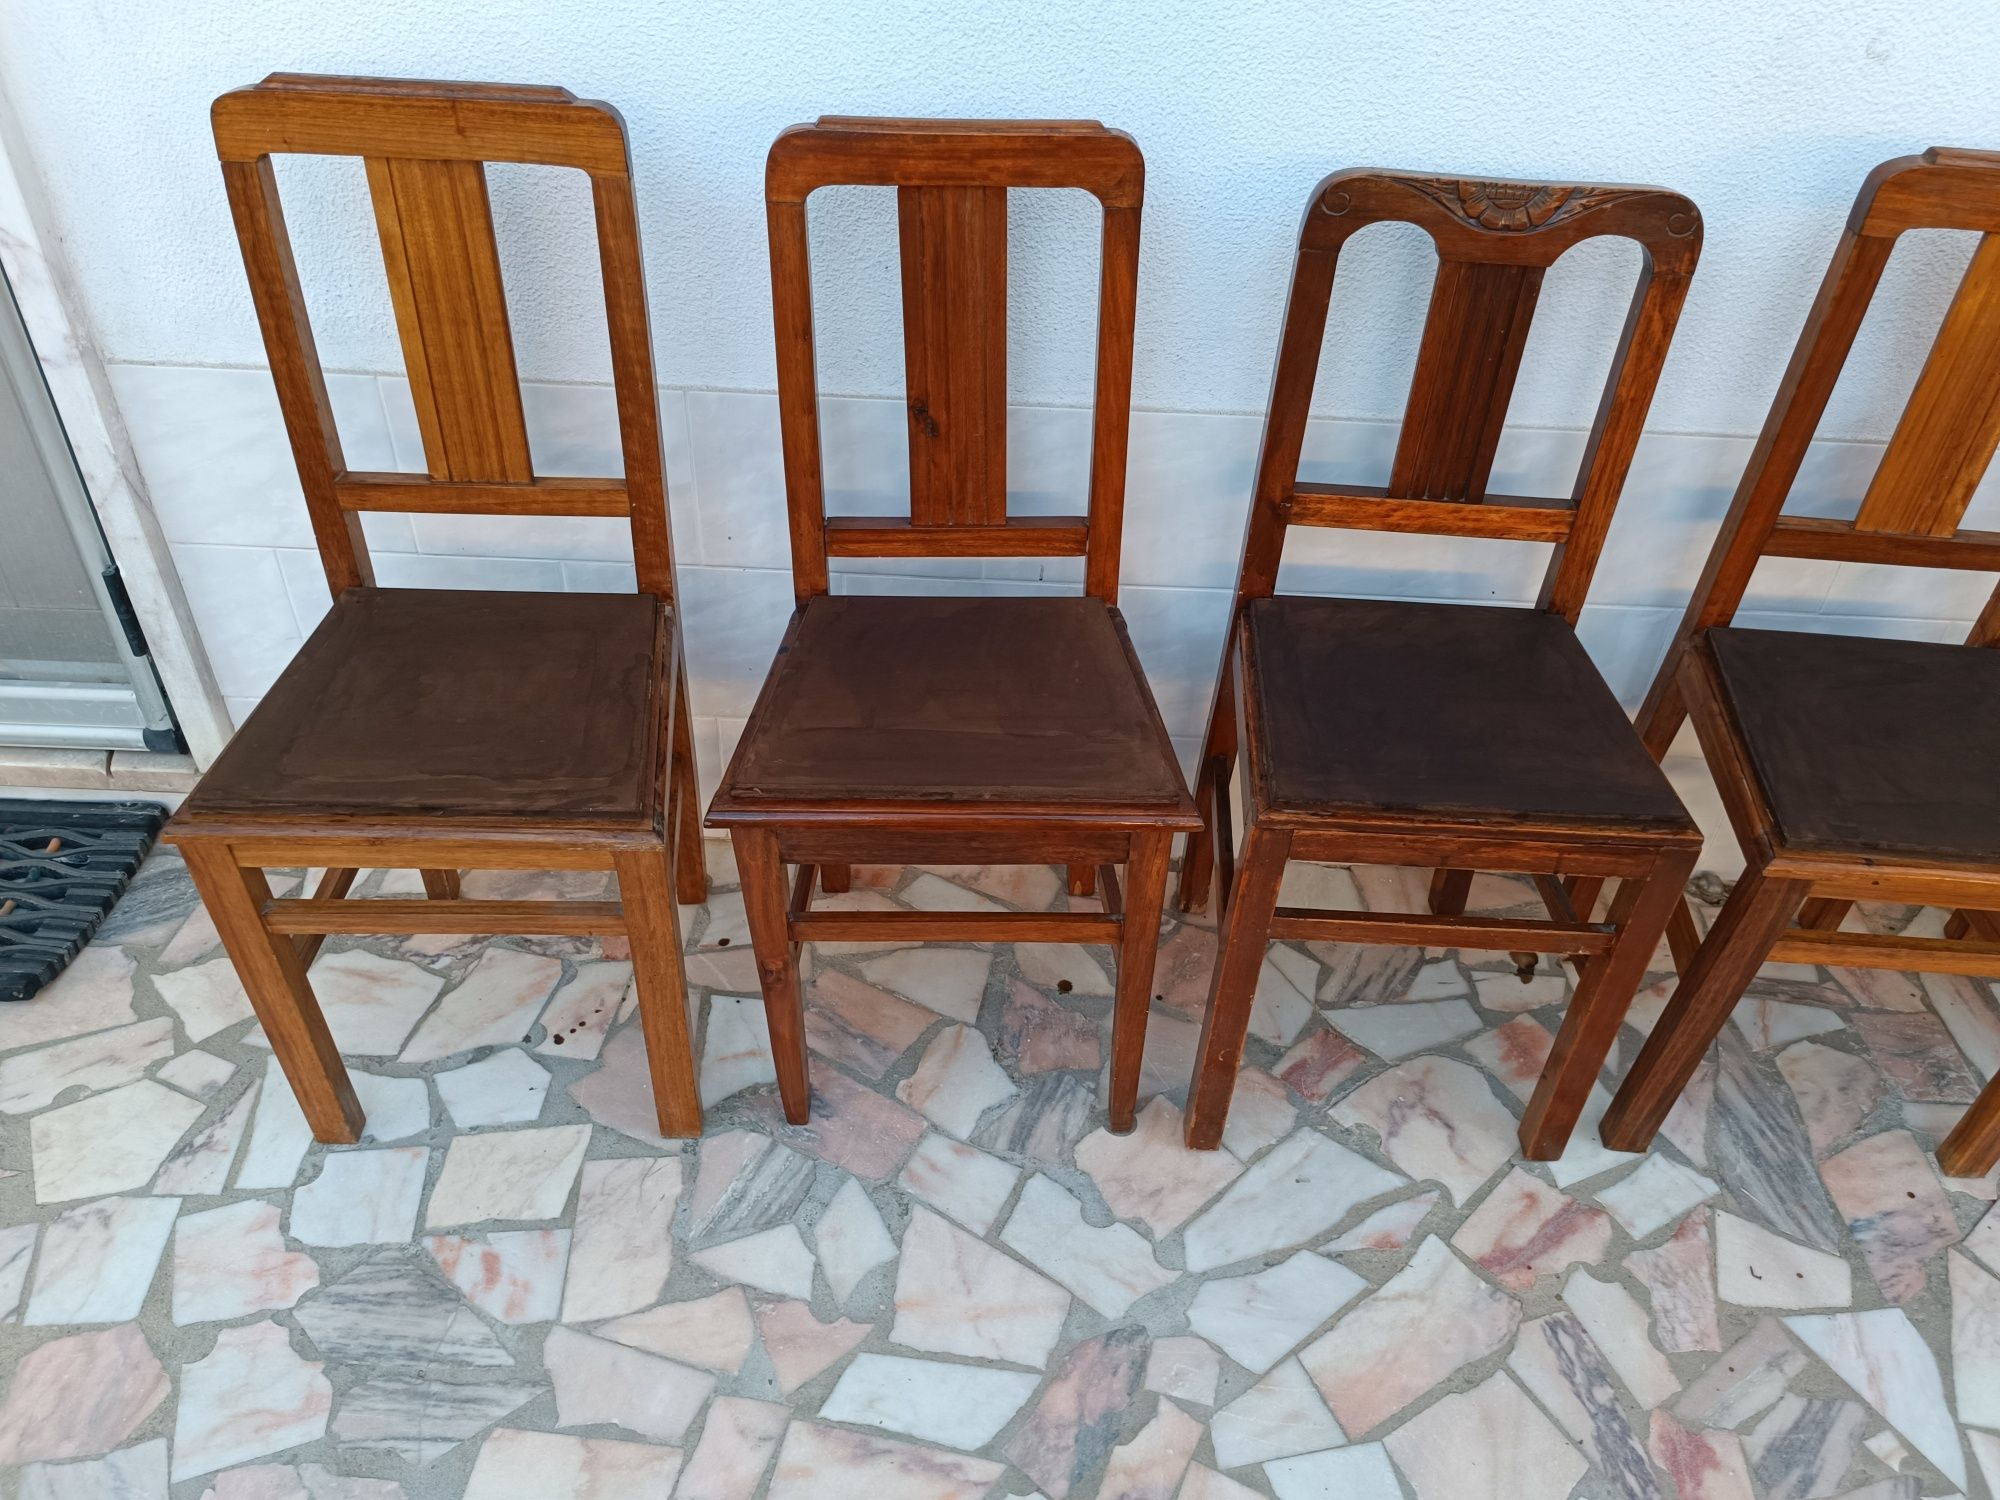 8 cadeiras de madeira maciça 15 € cada uma